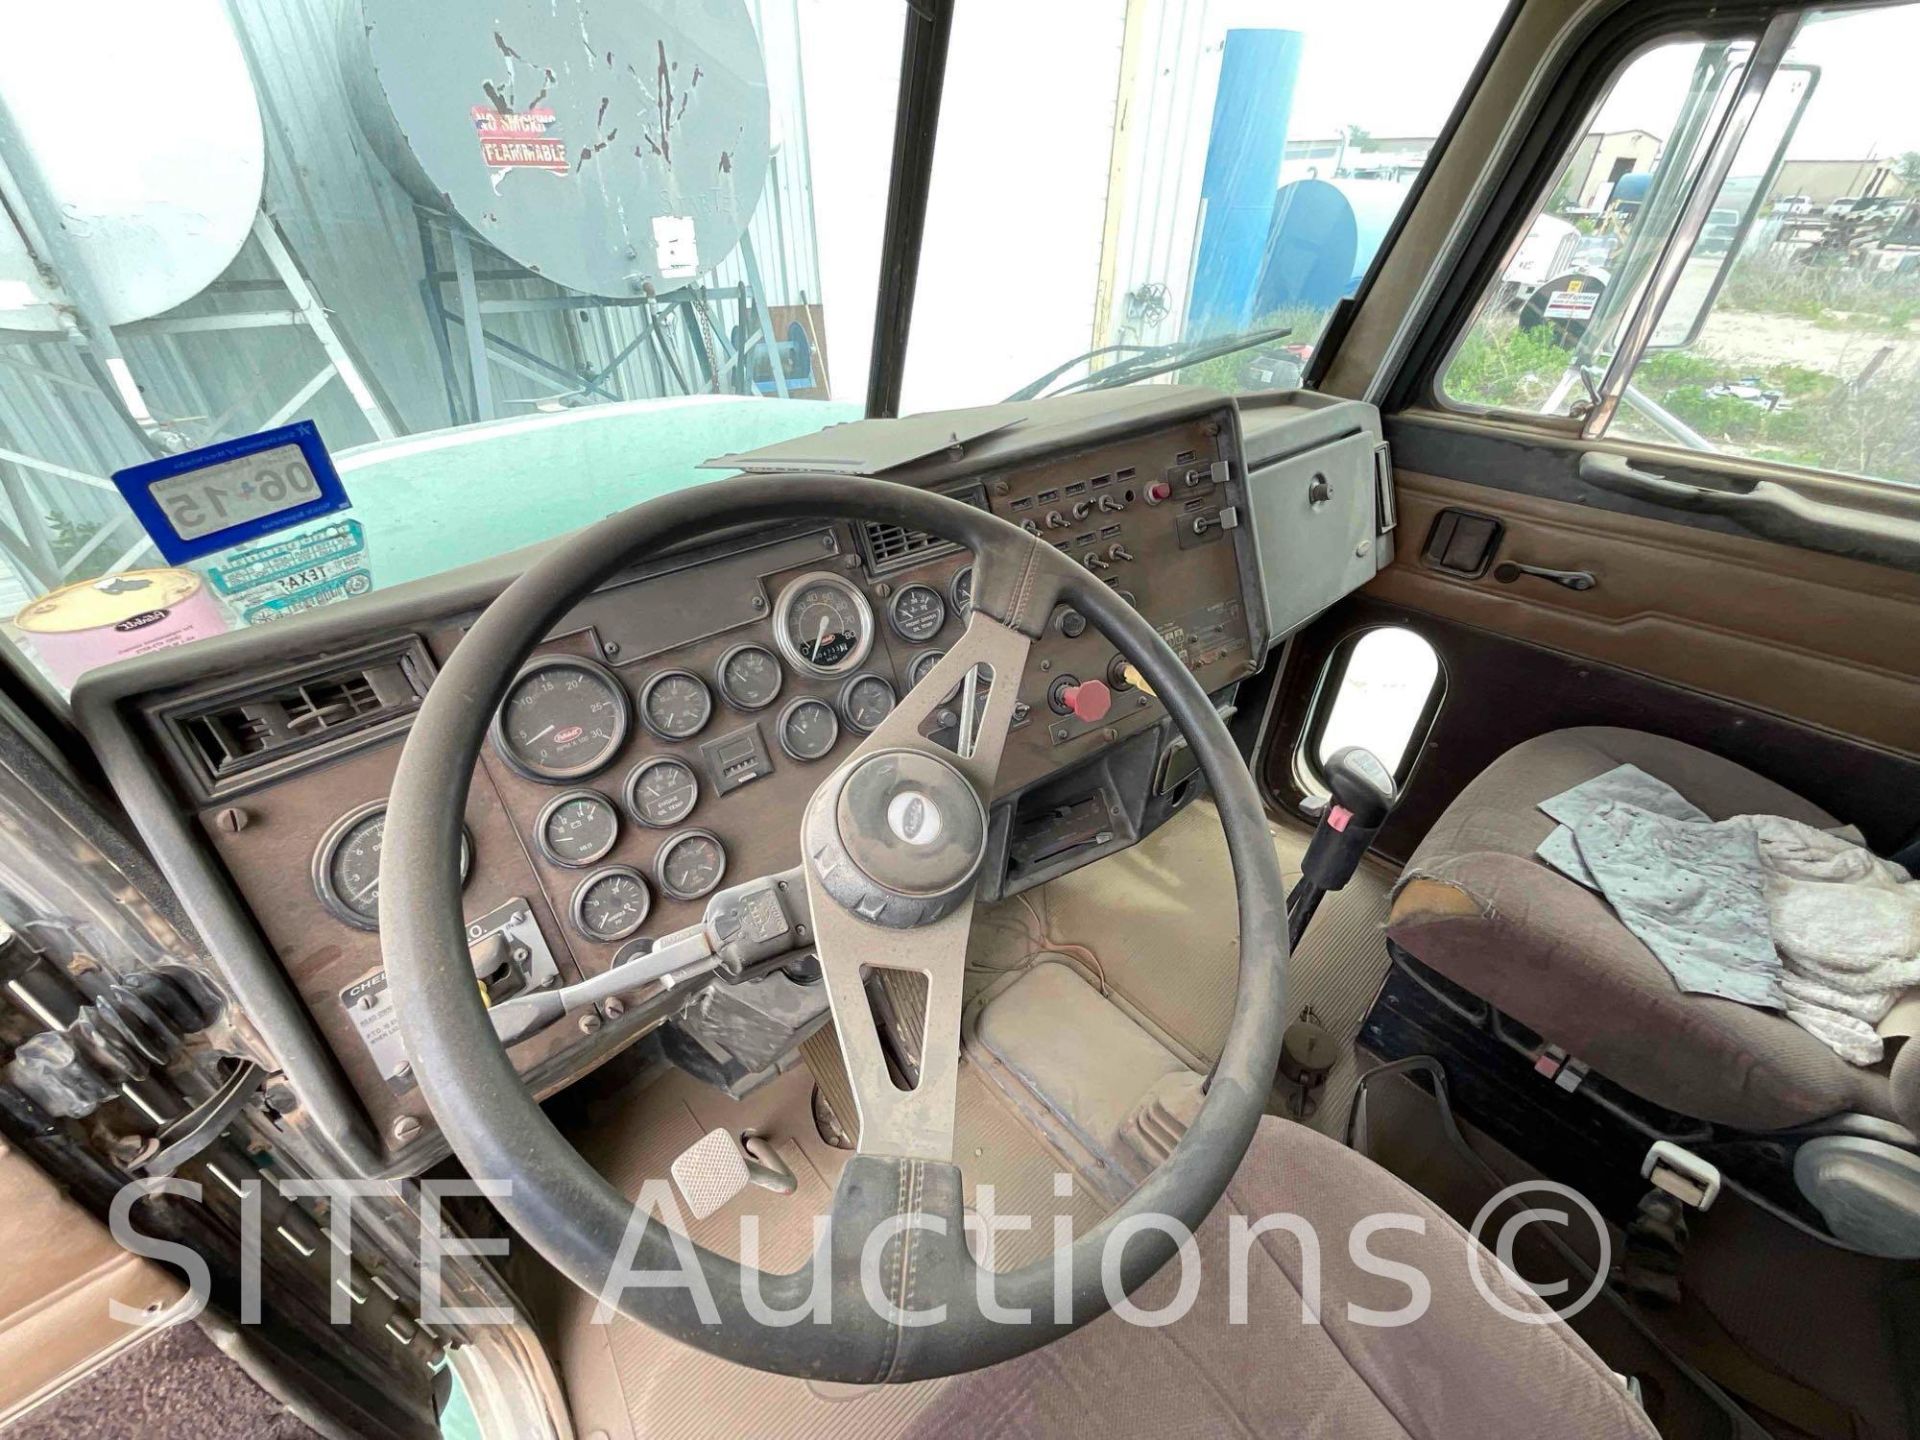 1994 Peterbilt 375 T/A Fuel Truck - Image 22 of 30